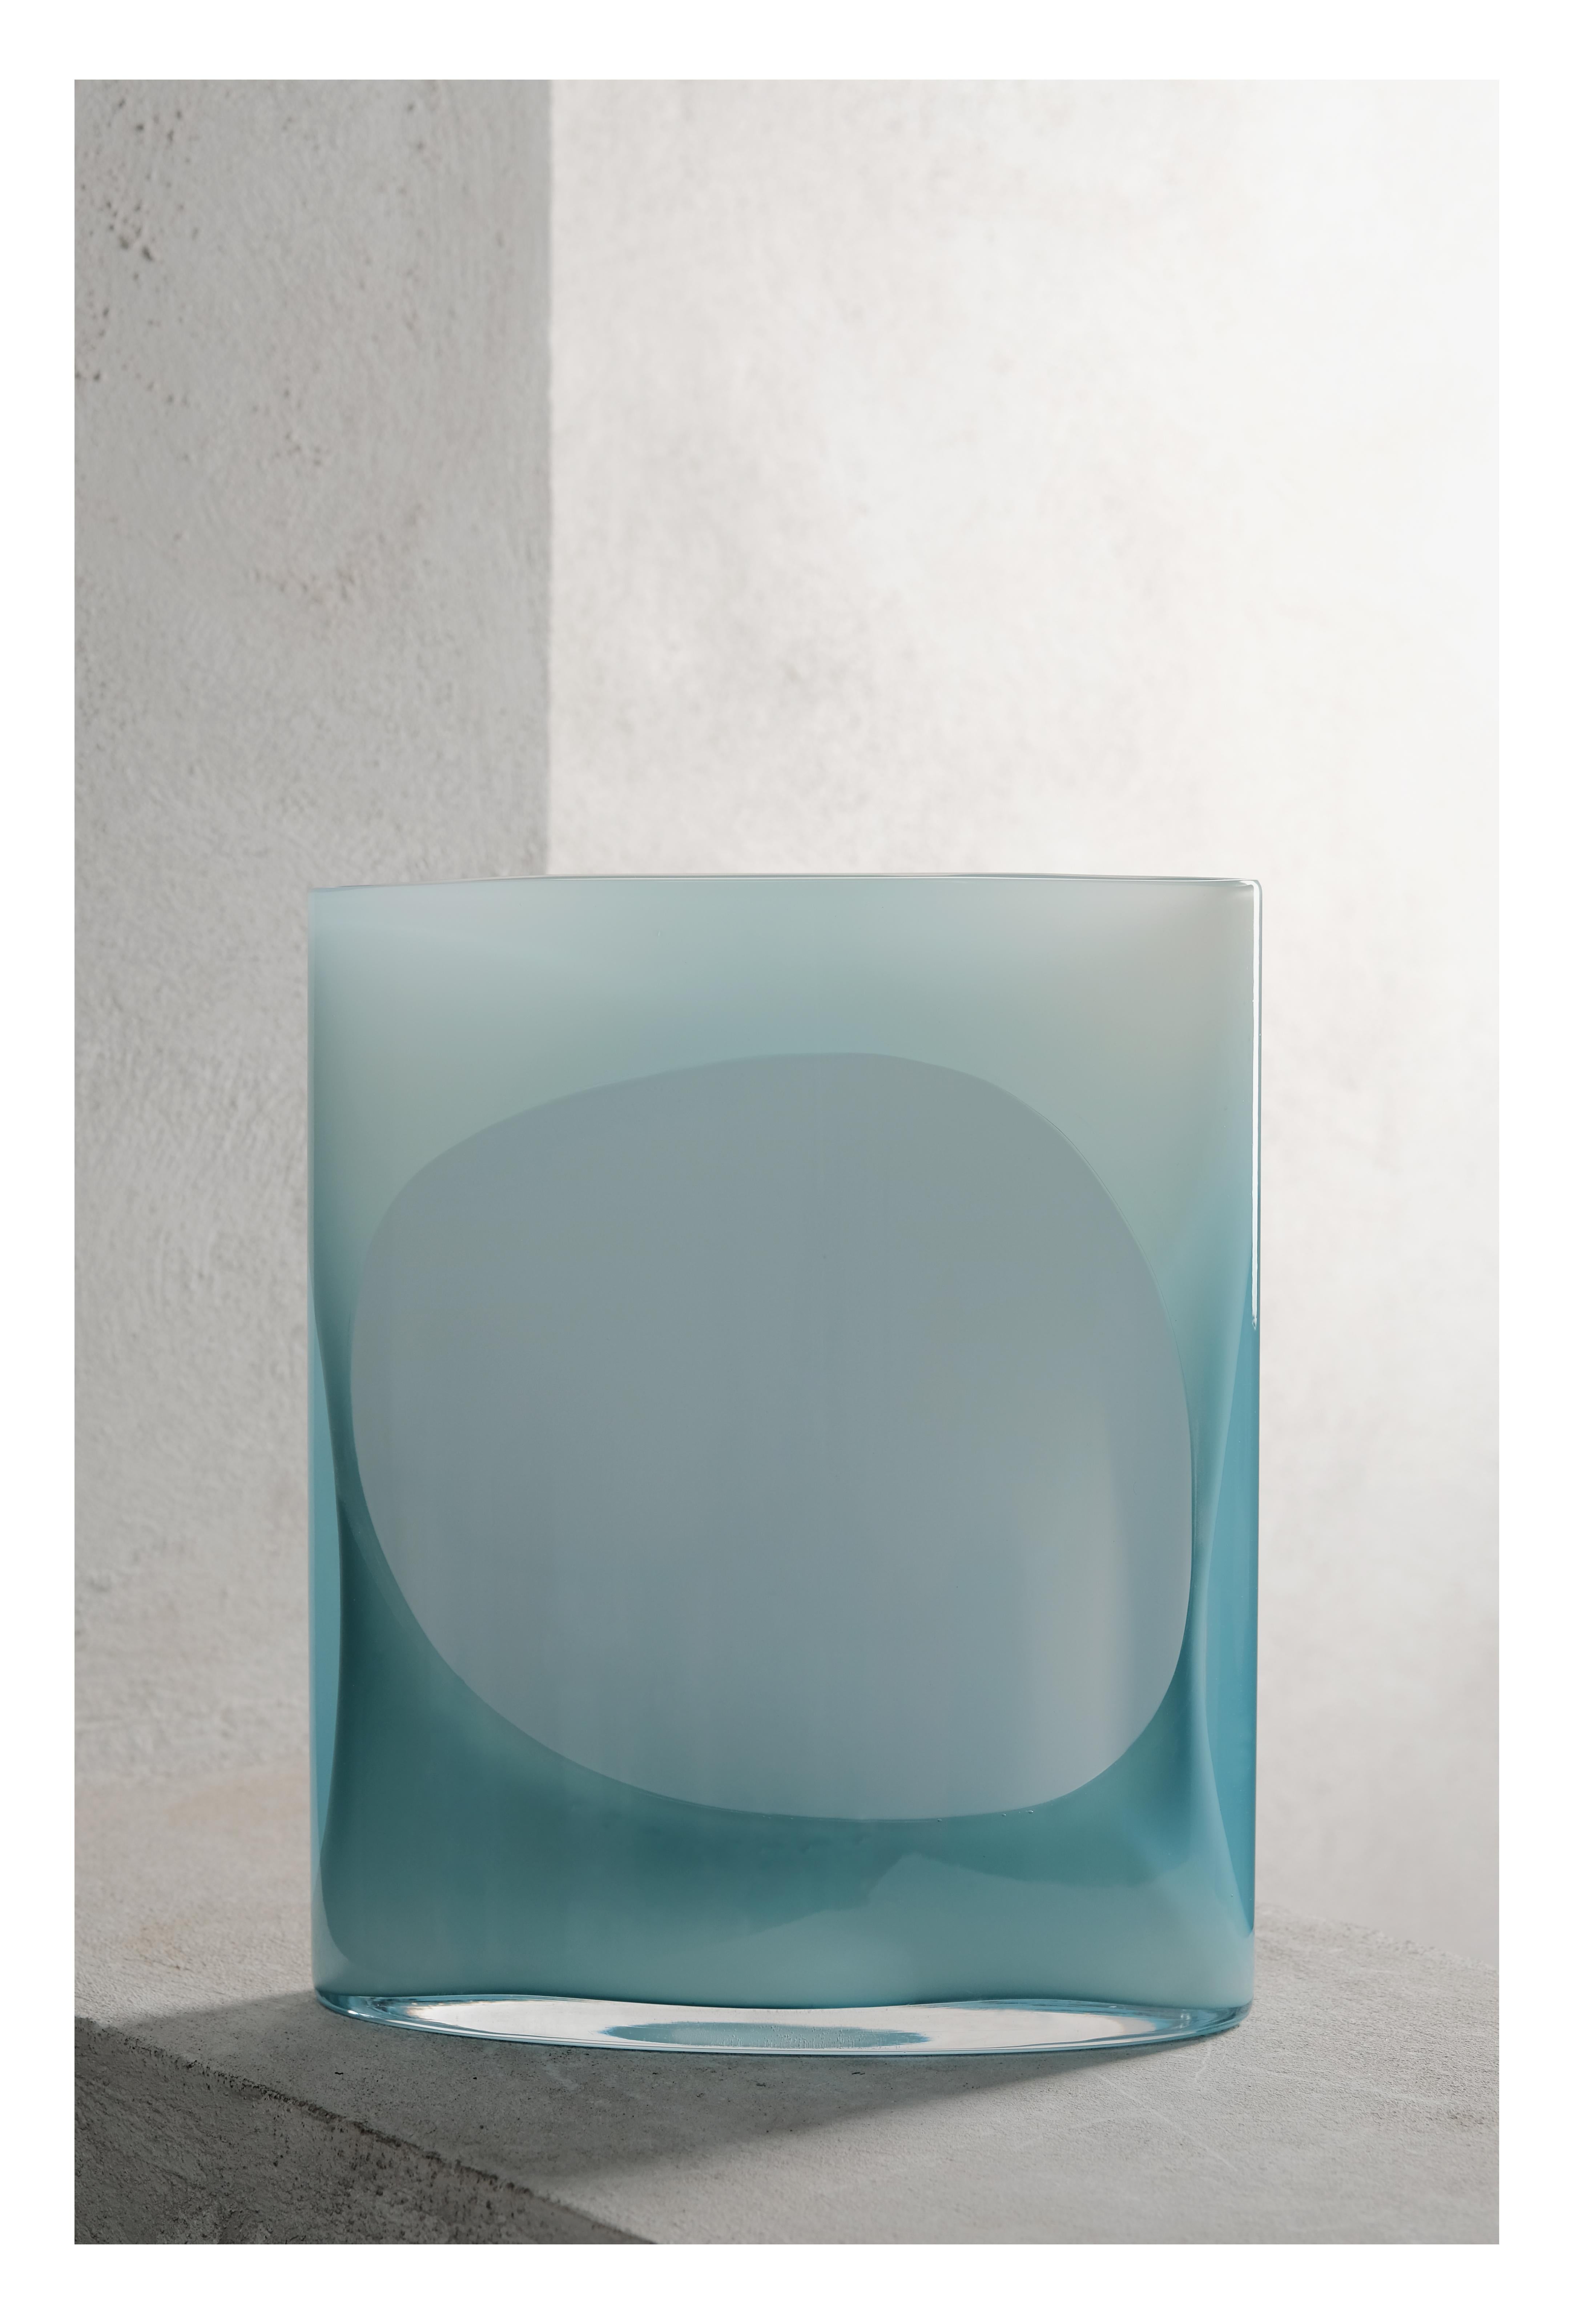 Fruit d'une collaboration d'un an entre le designer franco-suisse et le Nouvel Studio, Isla explore la juxtaposition de myriades de teintes et de transparences de verre à travers deux tailles de vases différentes. La simplicité du design accentue la